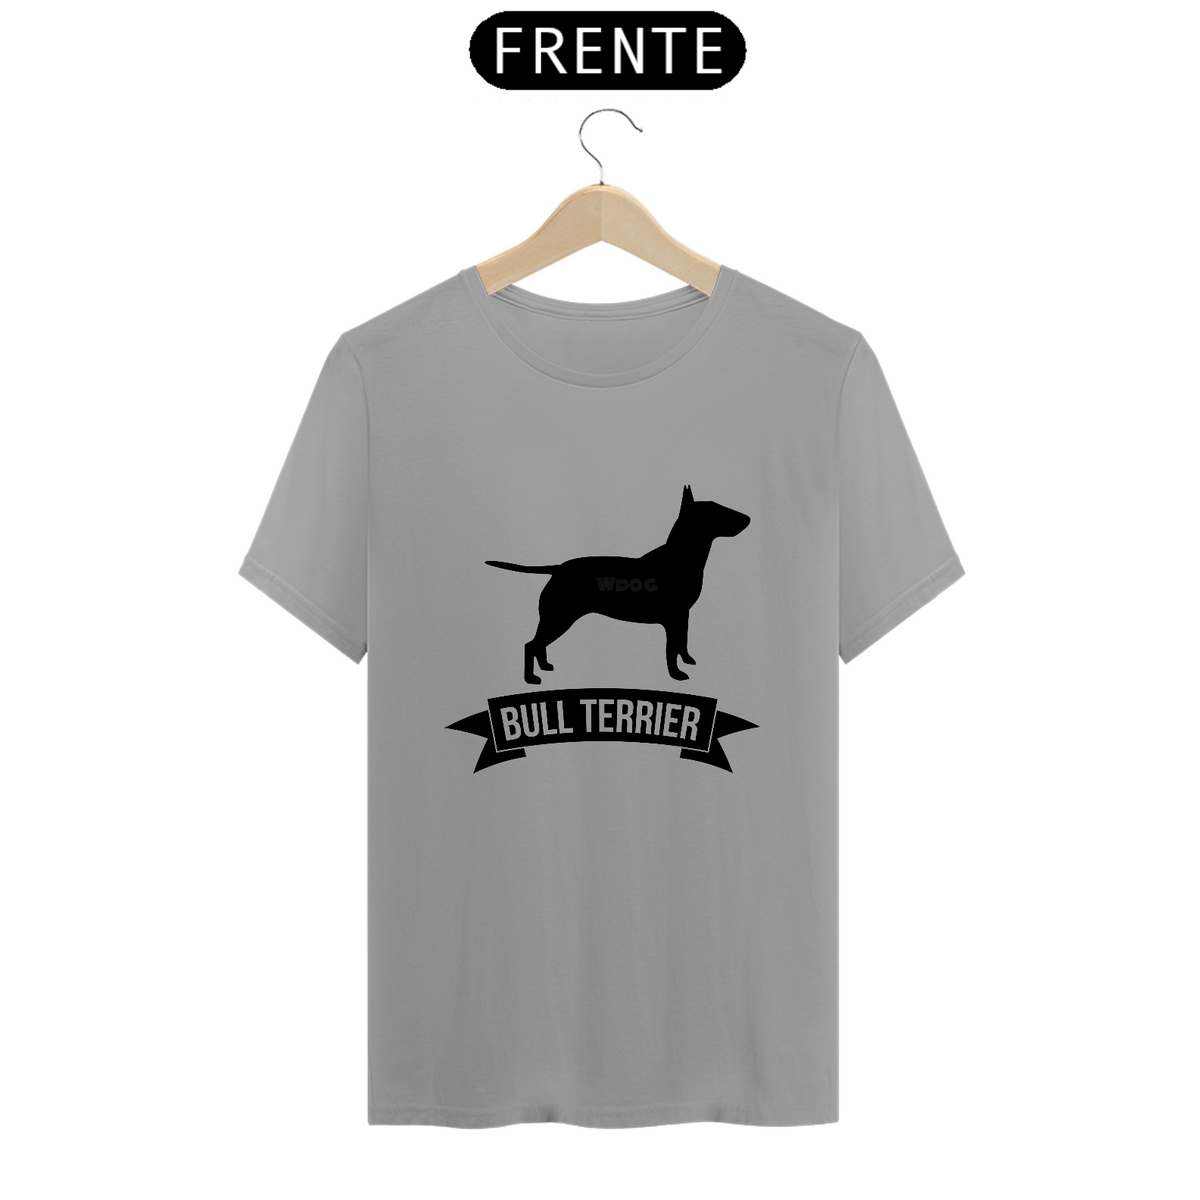 Nome do produto: Camiseta Bull Terrier competição / T-shirt Bull Terrier competion